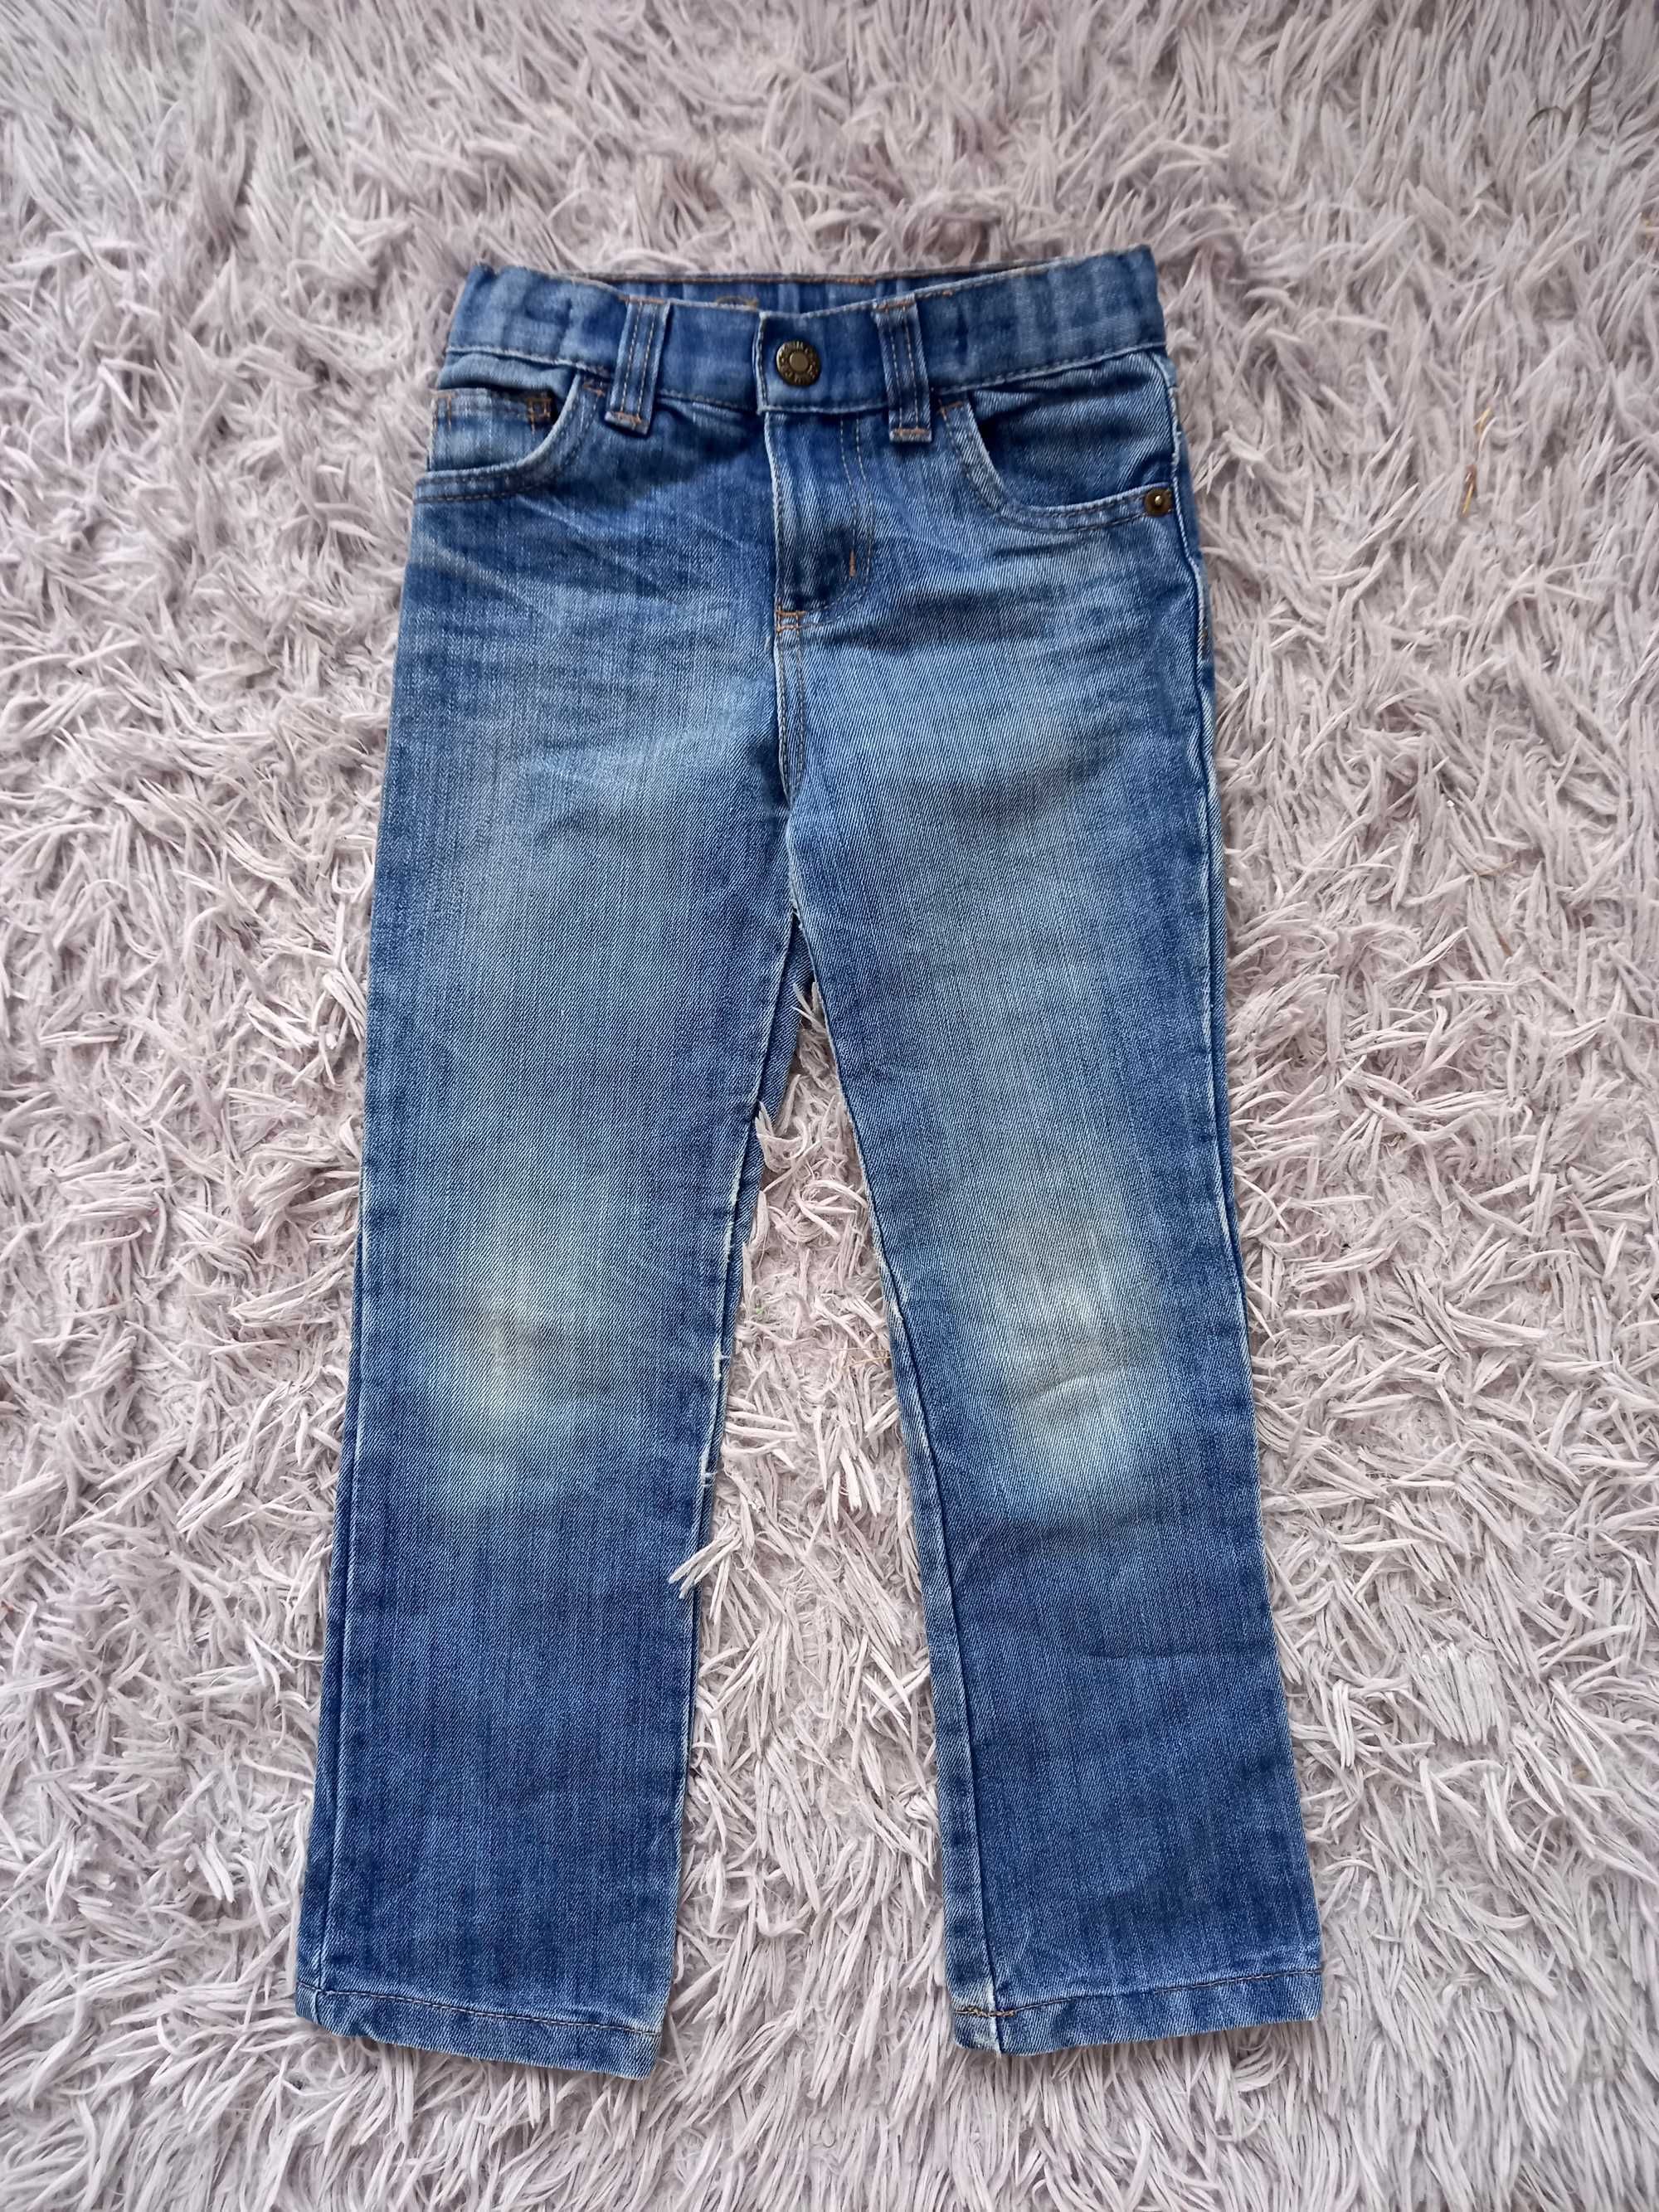 Jeans spodnie 2 pary 110 4-5 lat czarne jeansy dziewczęce